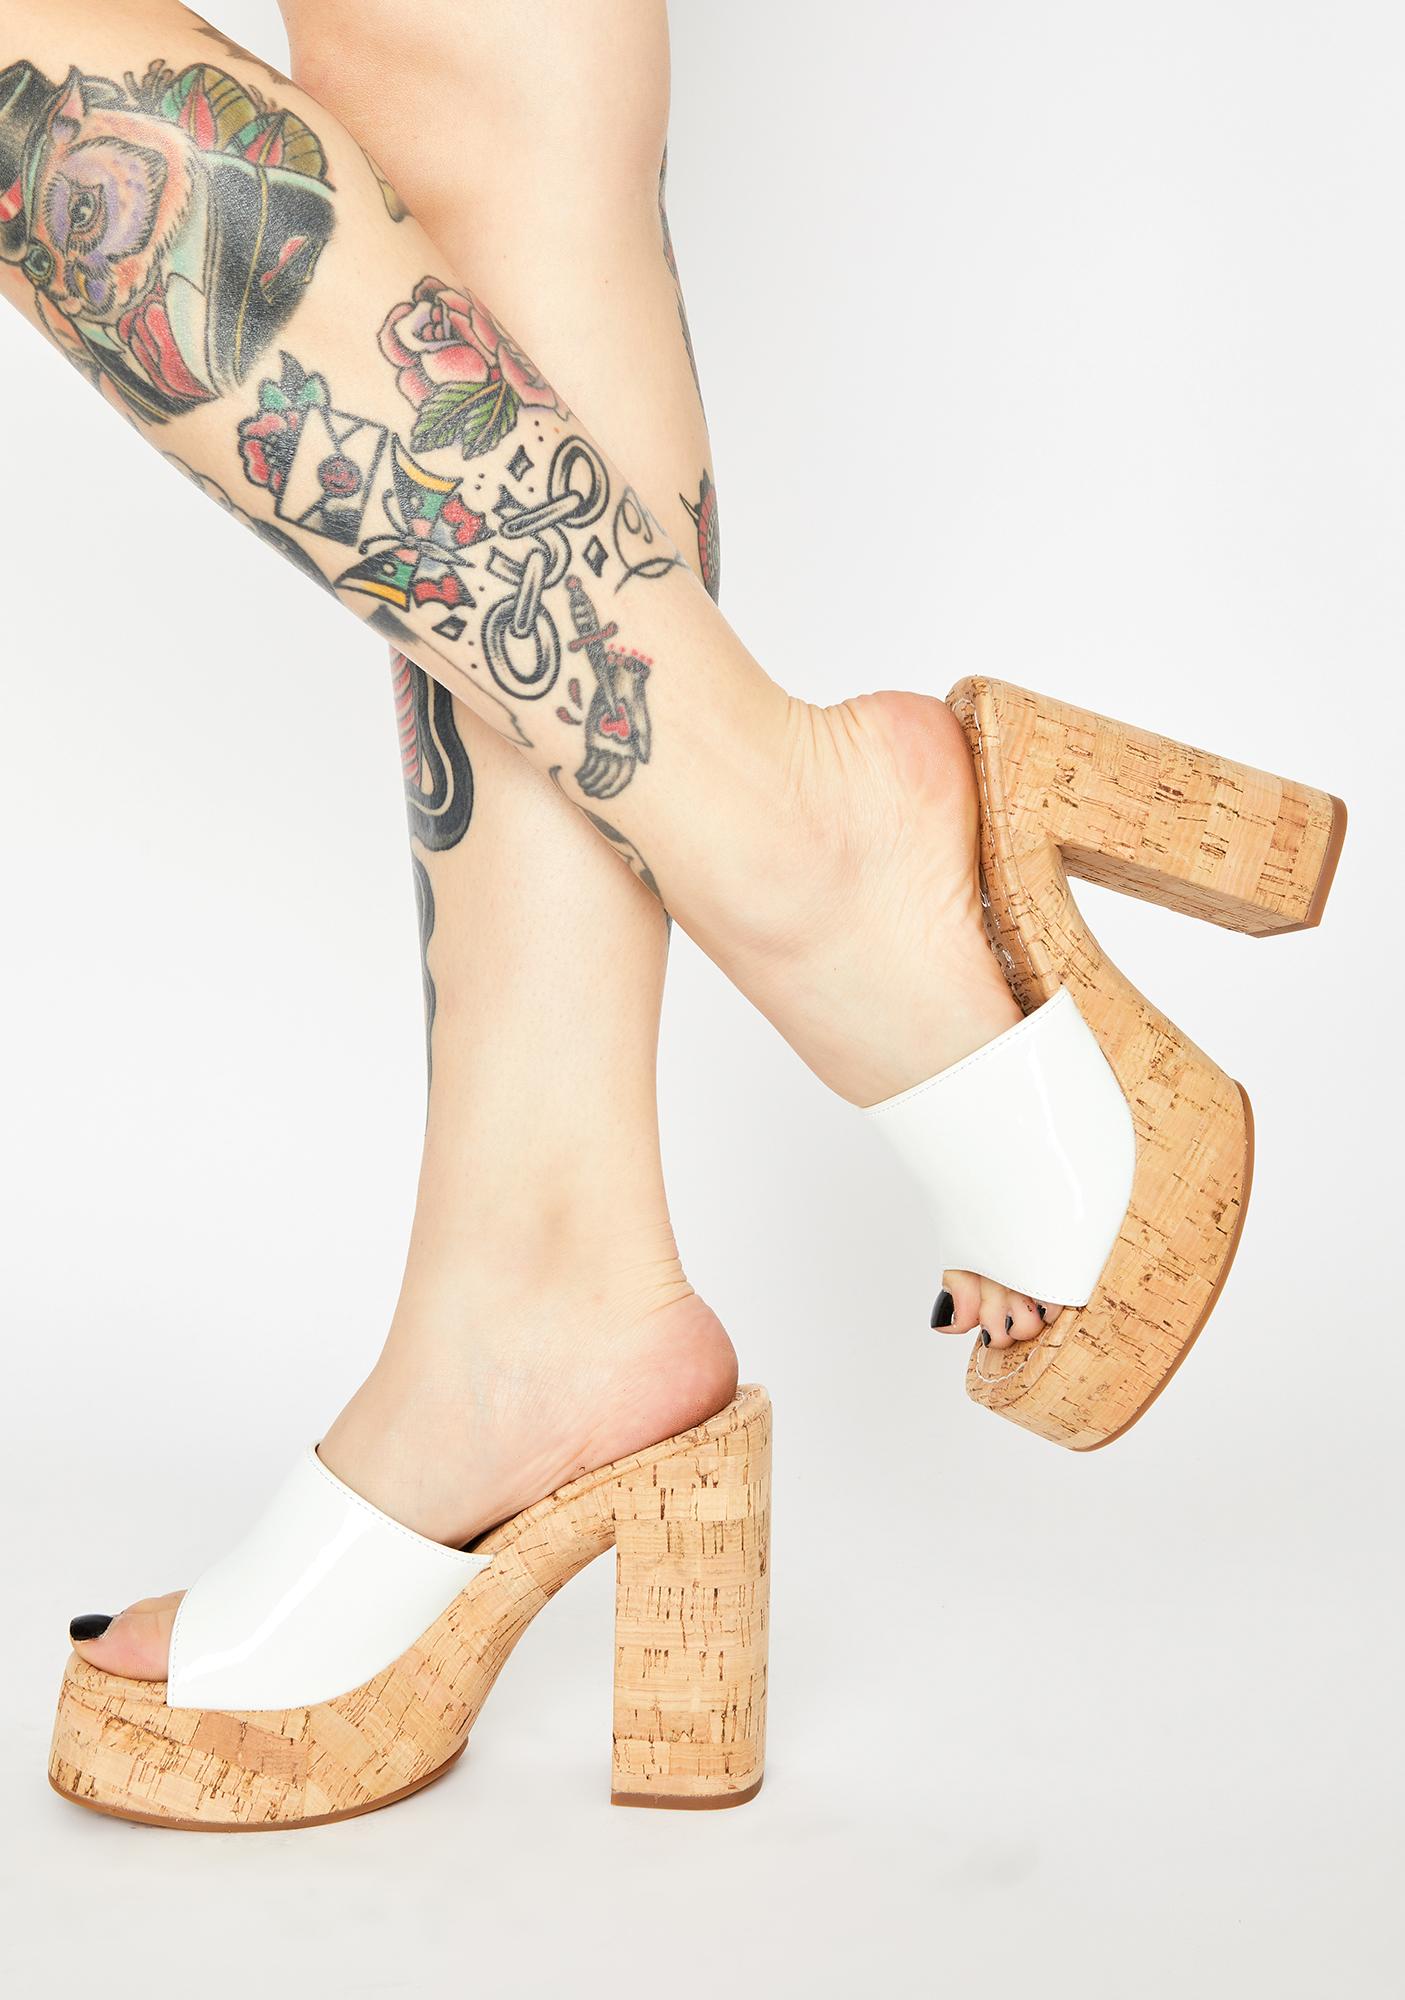 white heels australia